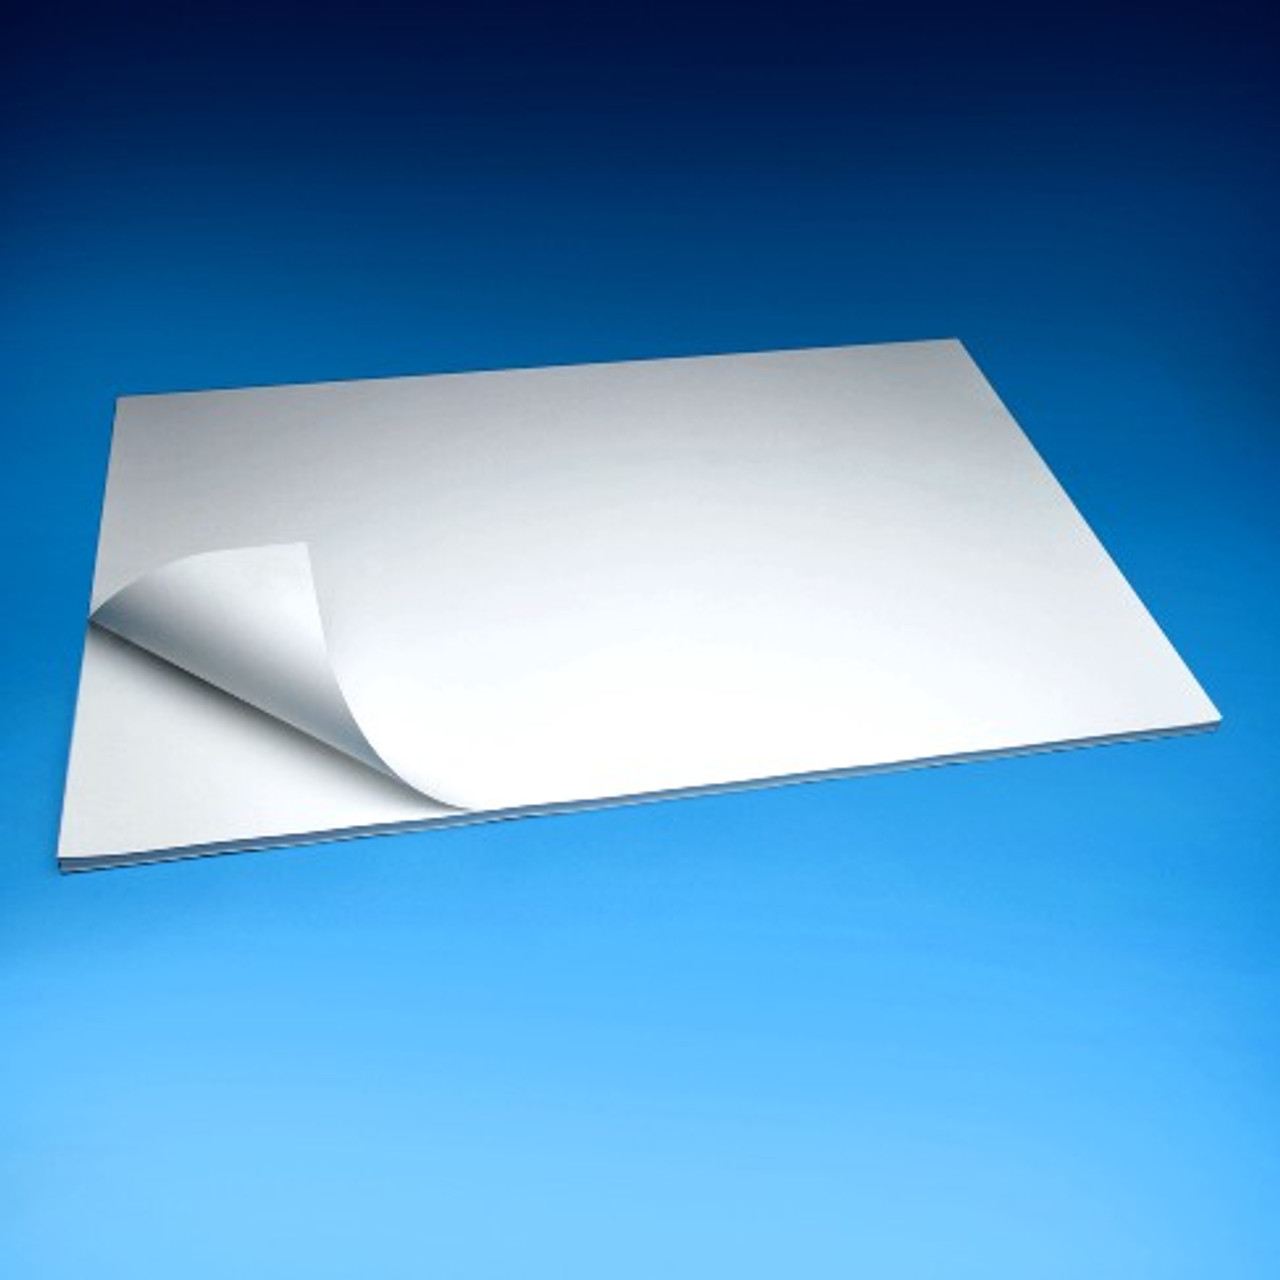 Self-Stick Foam Board - White Repositionable 24x36 (4)